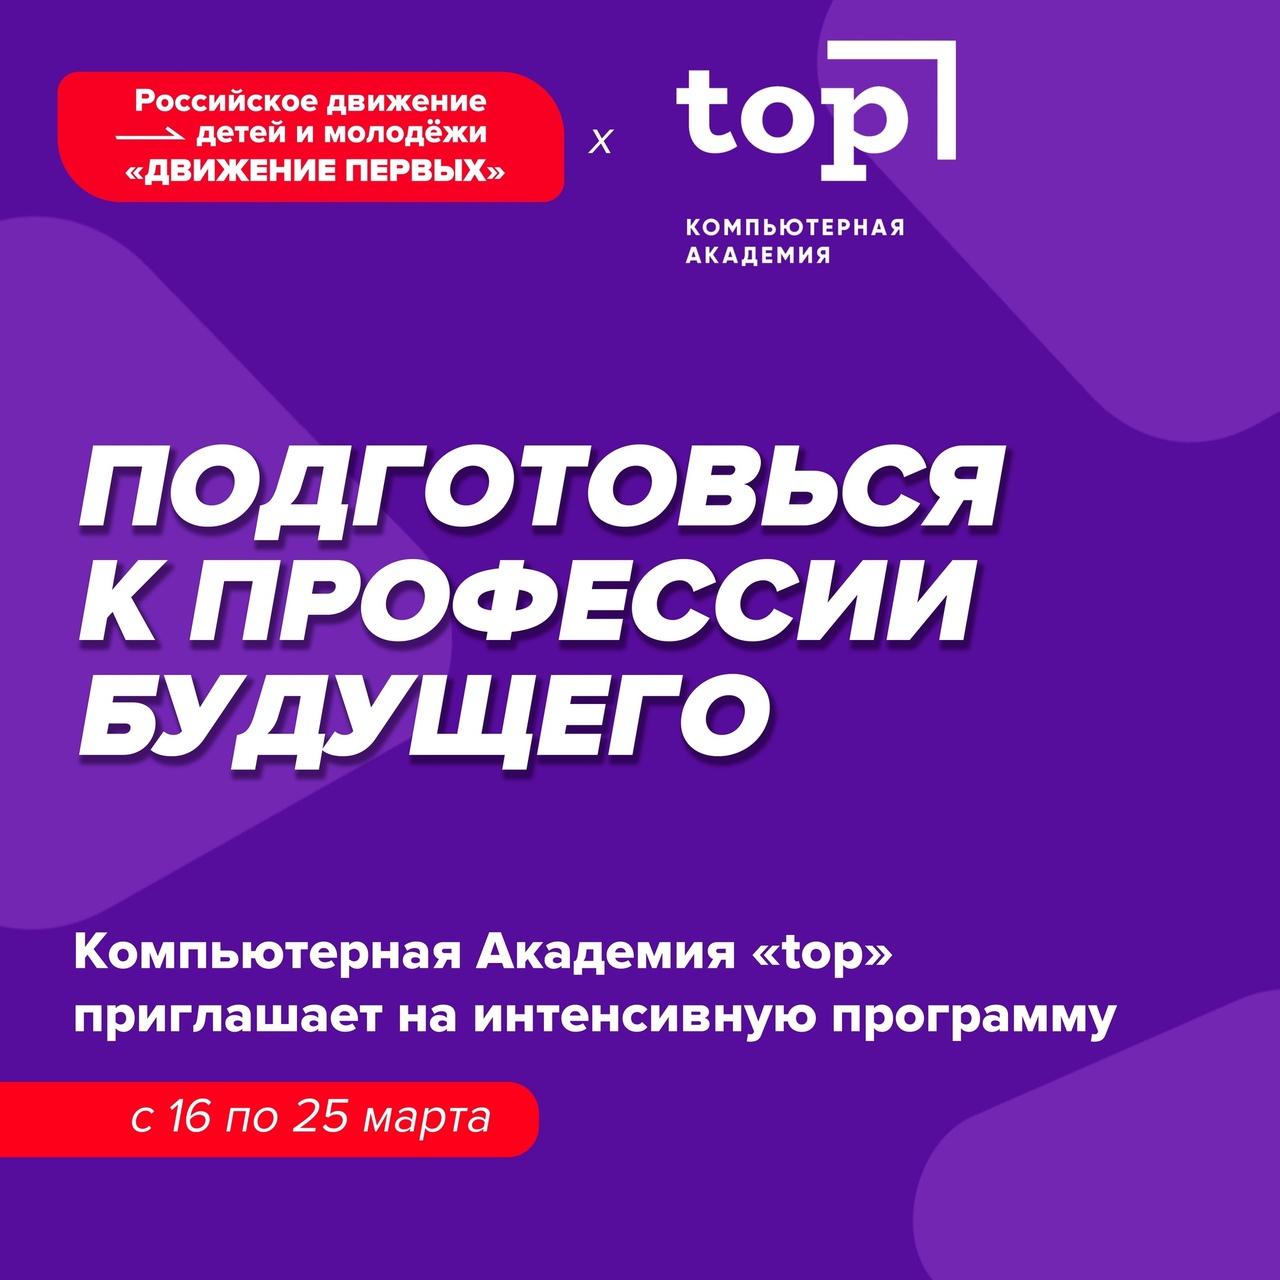 Bootcamp - программа подготовки к профессиям будущего для подростков от Компьютерной Академии TOP | Саранск!.